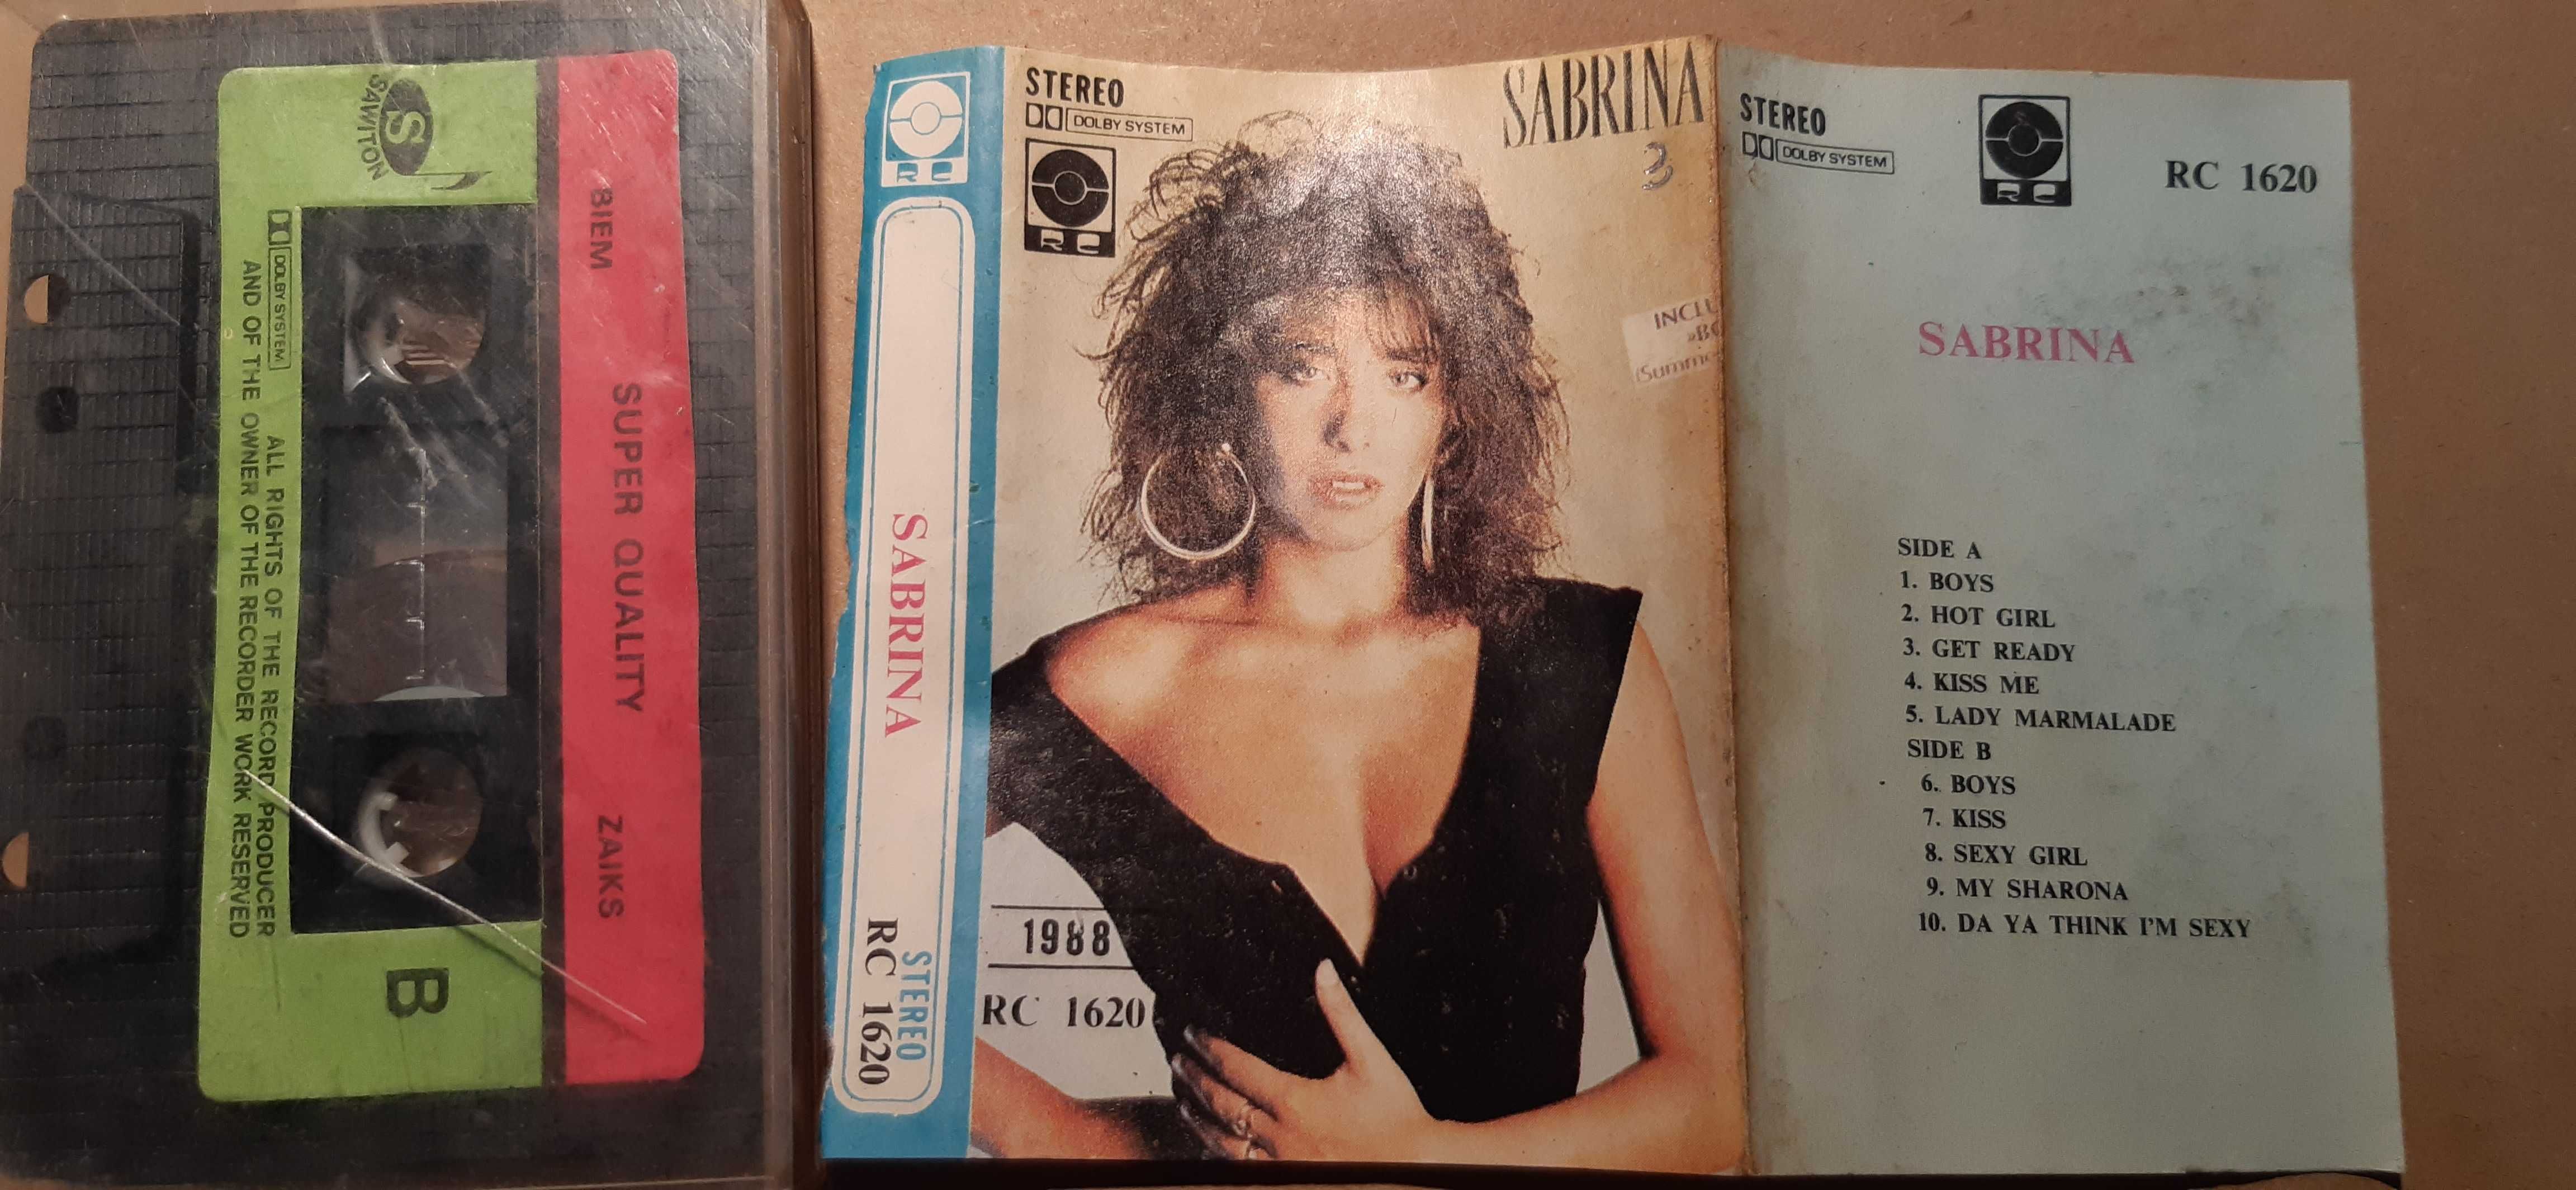 stara okładka kasety magnetofonowej zdjęcie sabrina